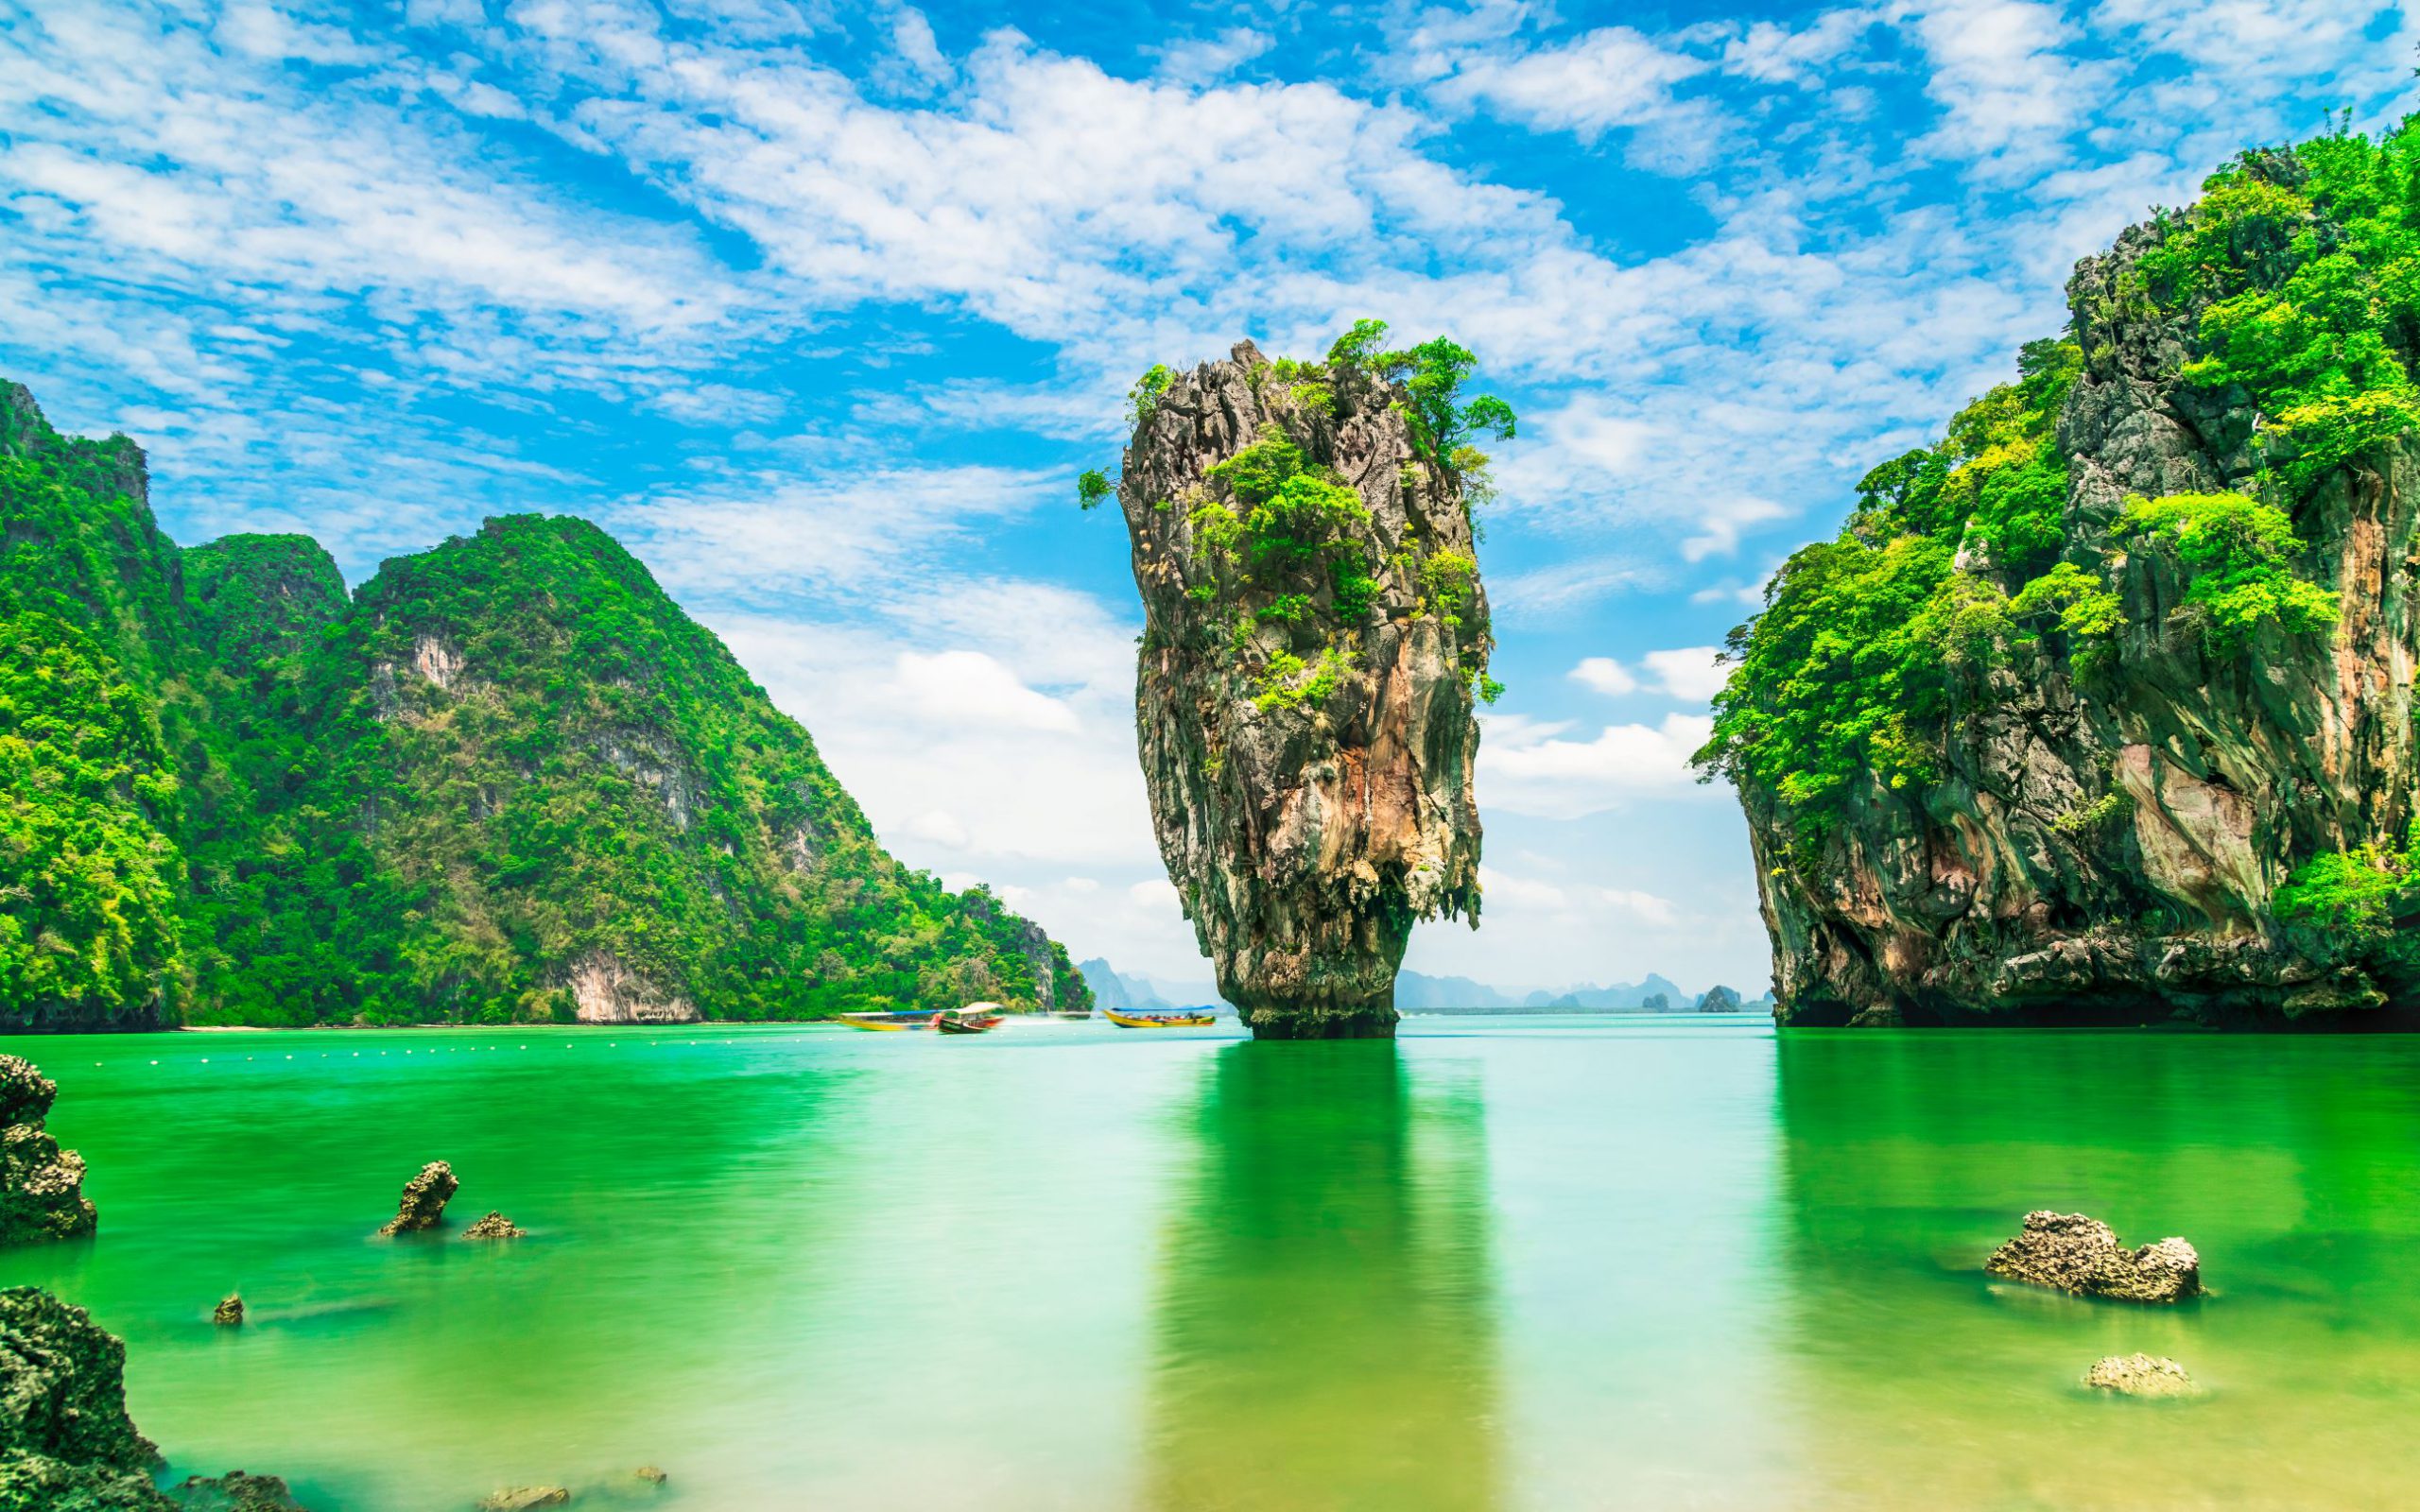 מי צריך ספר תיירות?! באתר המרכז למטייל תאילנד תמצאו את כל המידע לחופשה מושלמת!